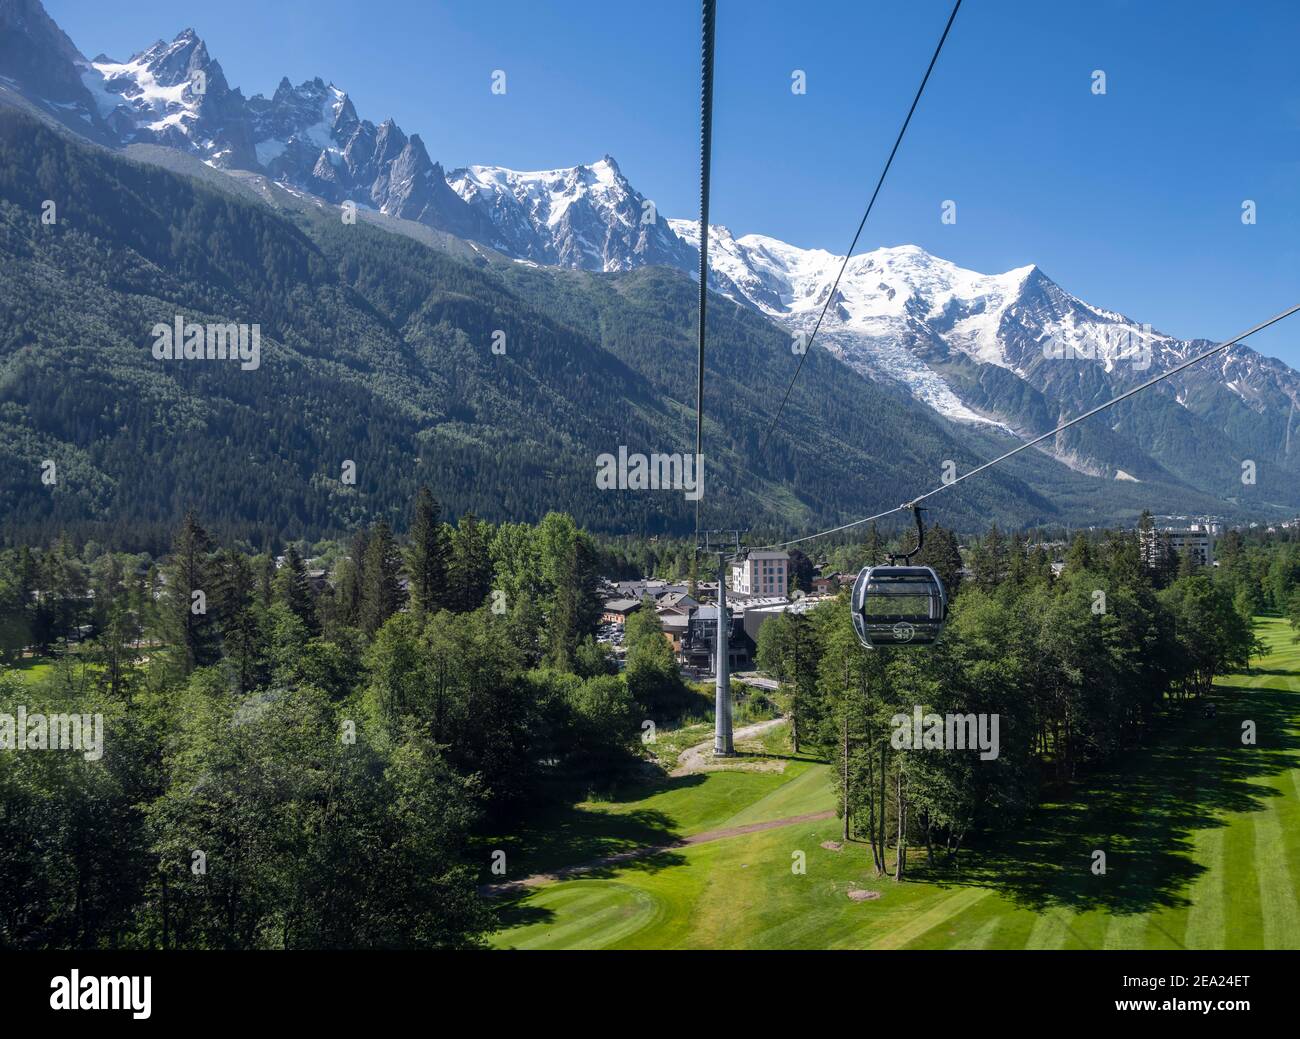 Gondole della funivia la Flegere, nel ghiacciaio posteriore del massiccio del Monte Bianco, Chamonix-Mont-Blanc, alta Savoia, Francia Foto Stock